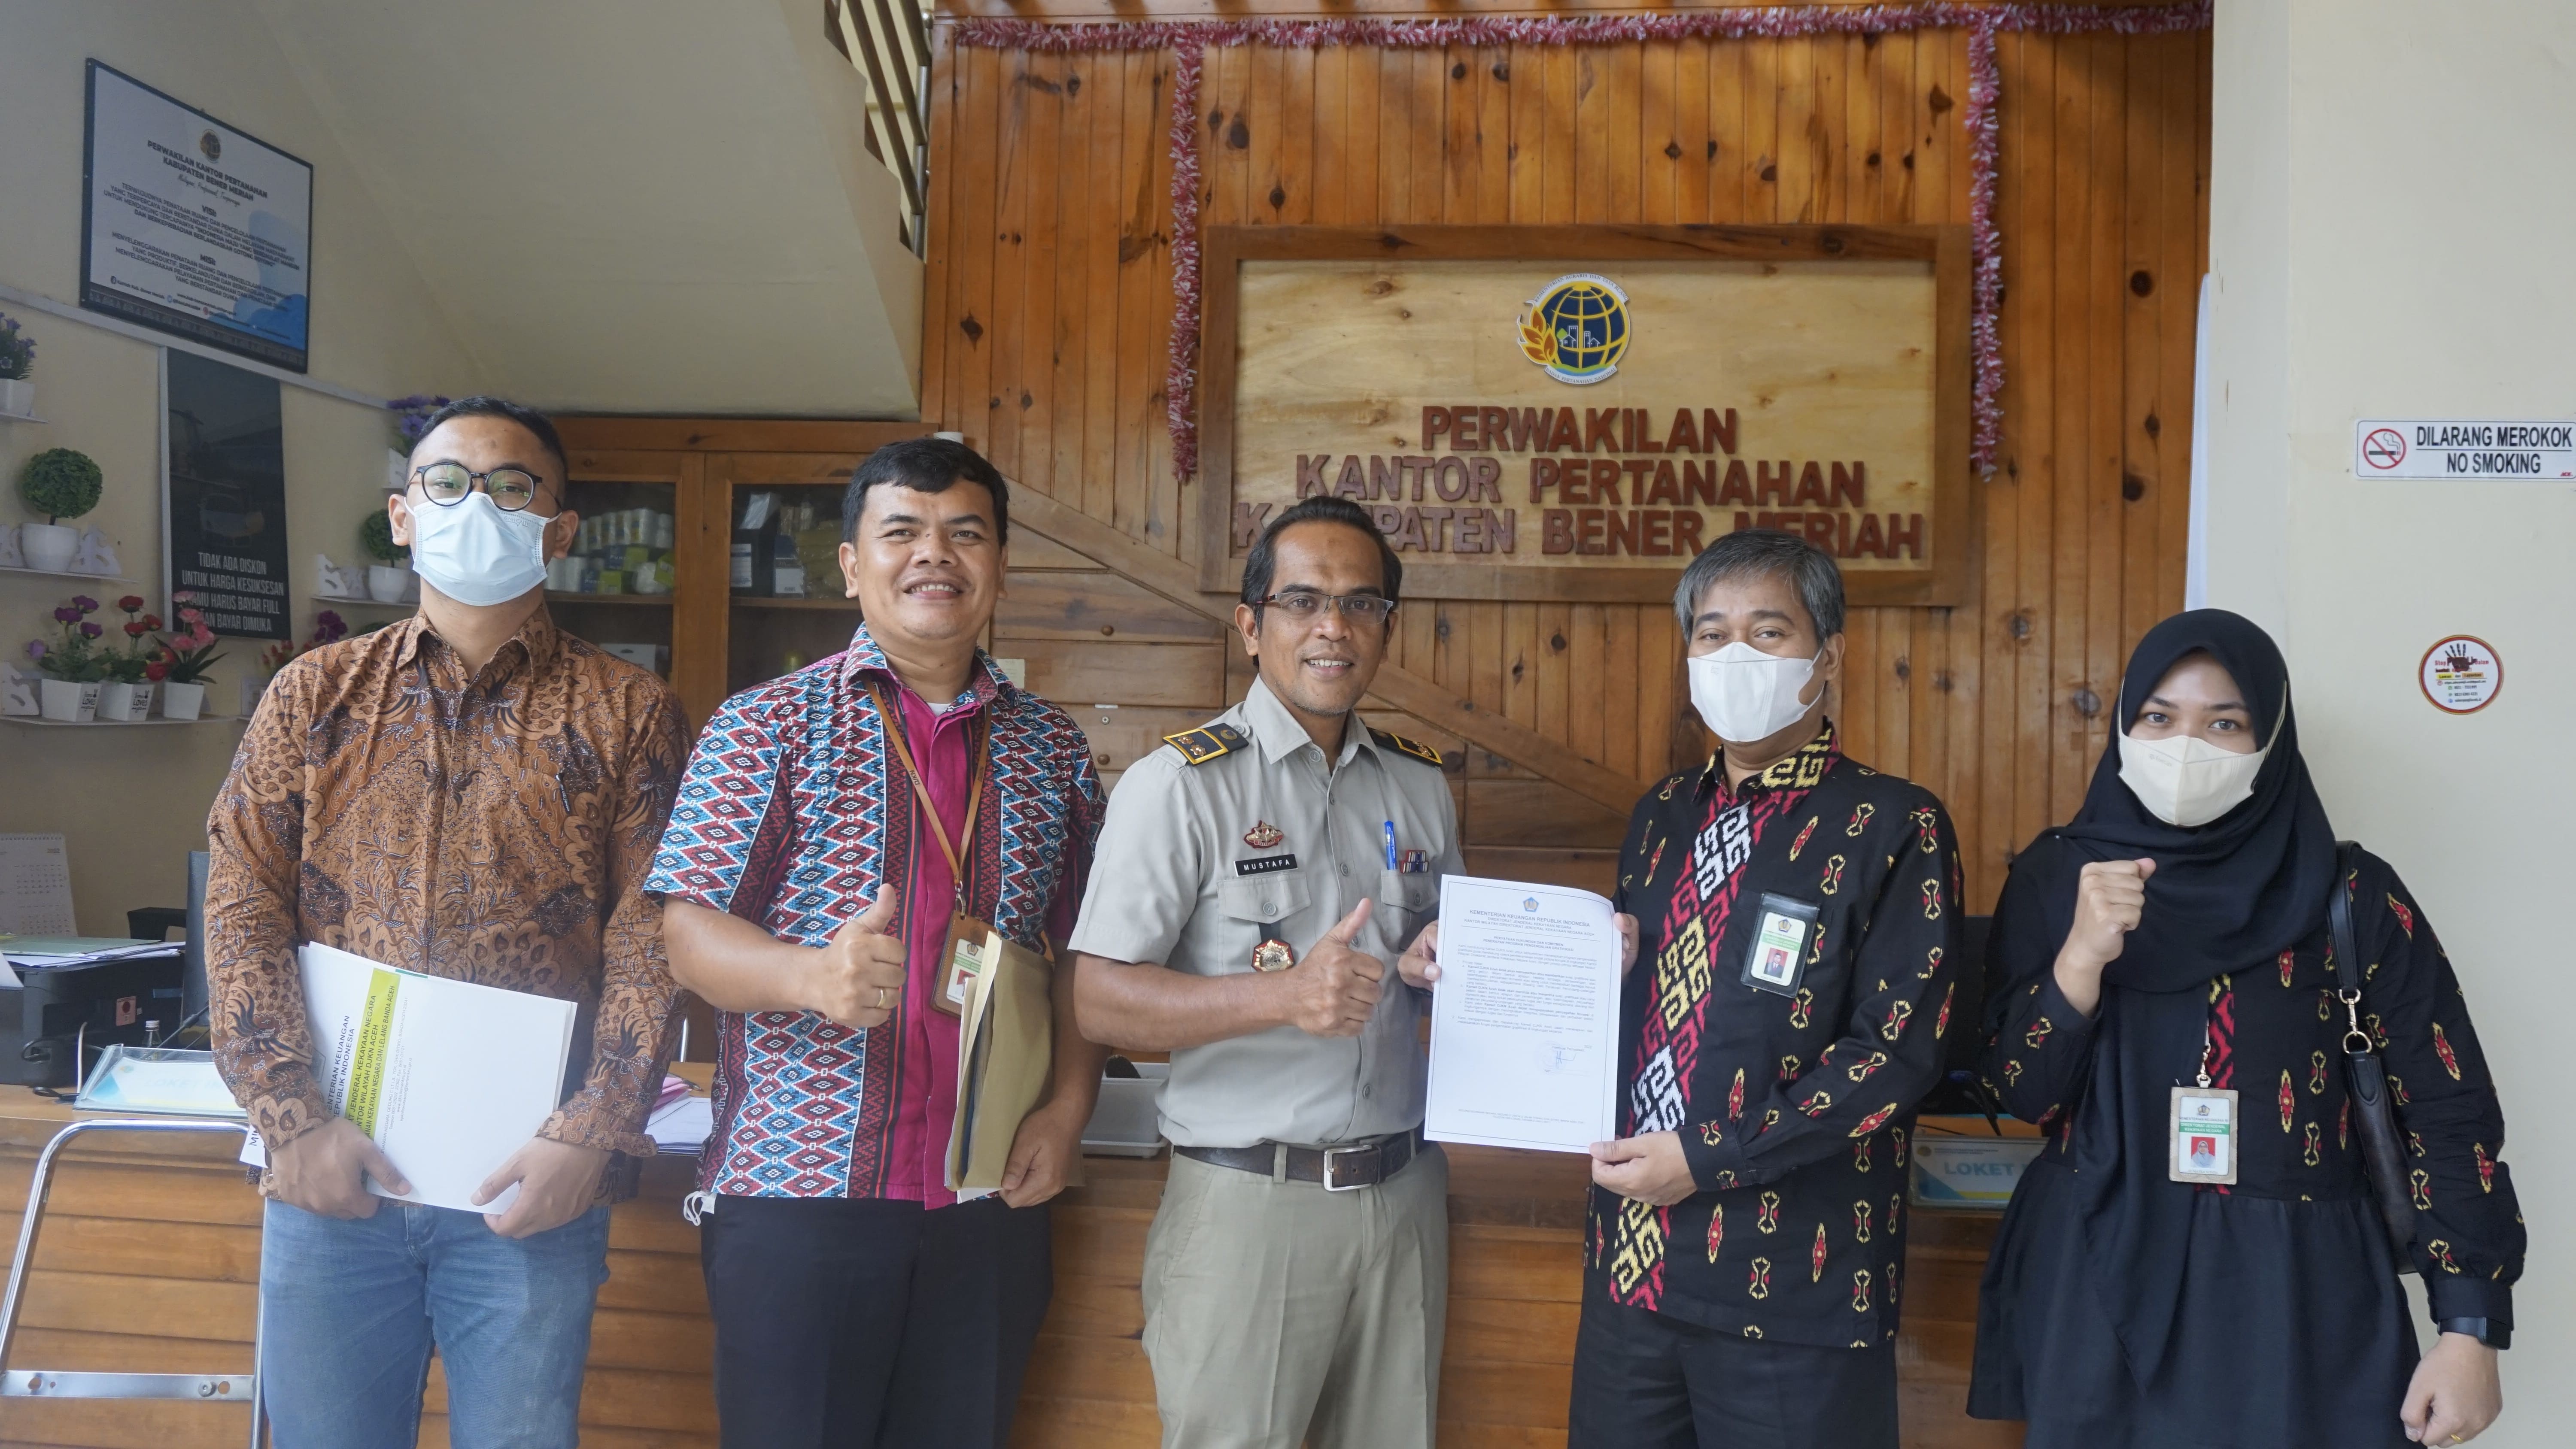 Penuntasan Sertipikasi BMN : Bener Meriah to Aceh Tengah